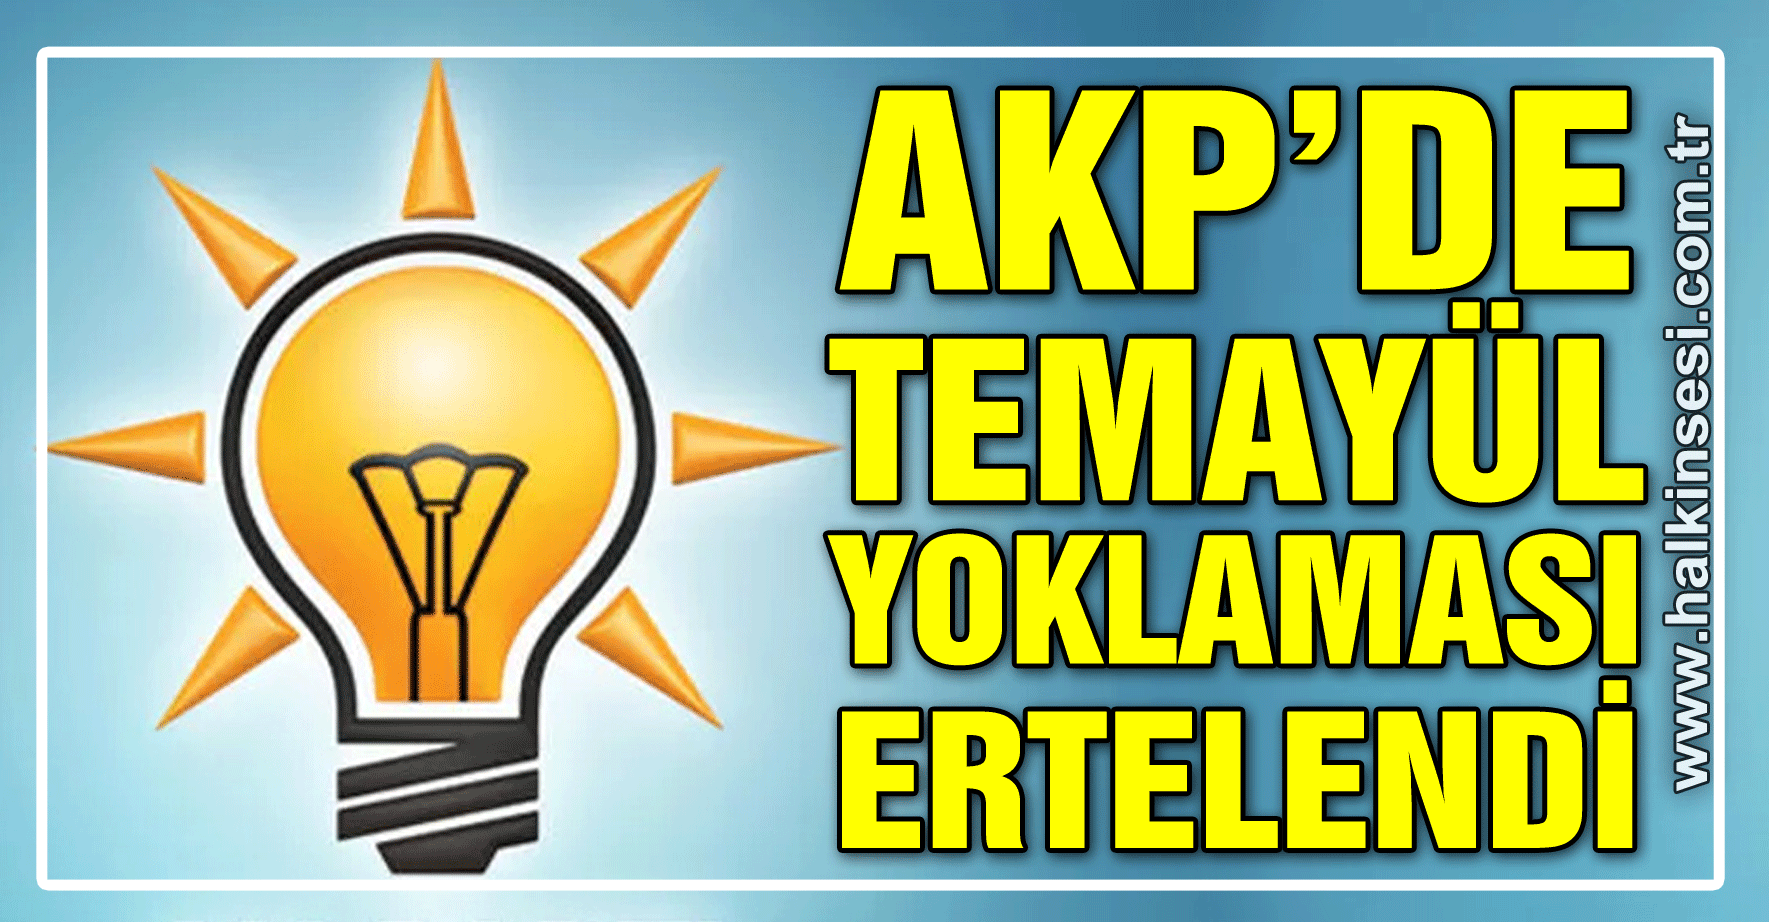 AKP'DE TEMAYÜL YOKLAMASI ERTELENDİ